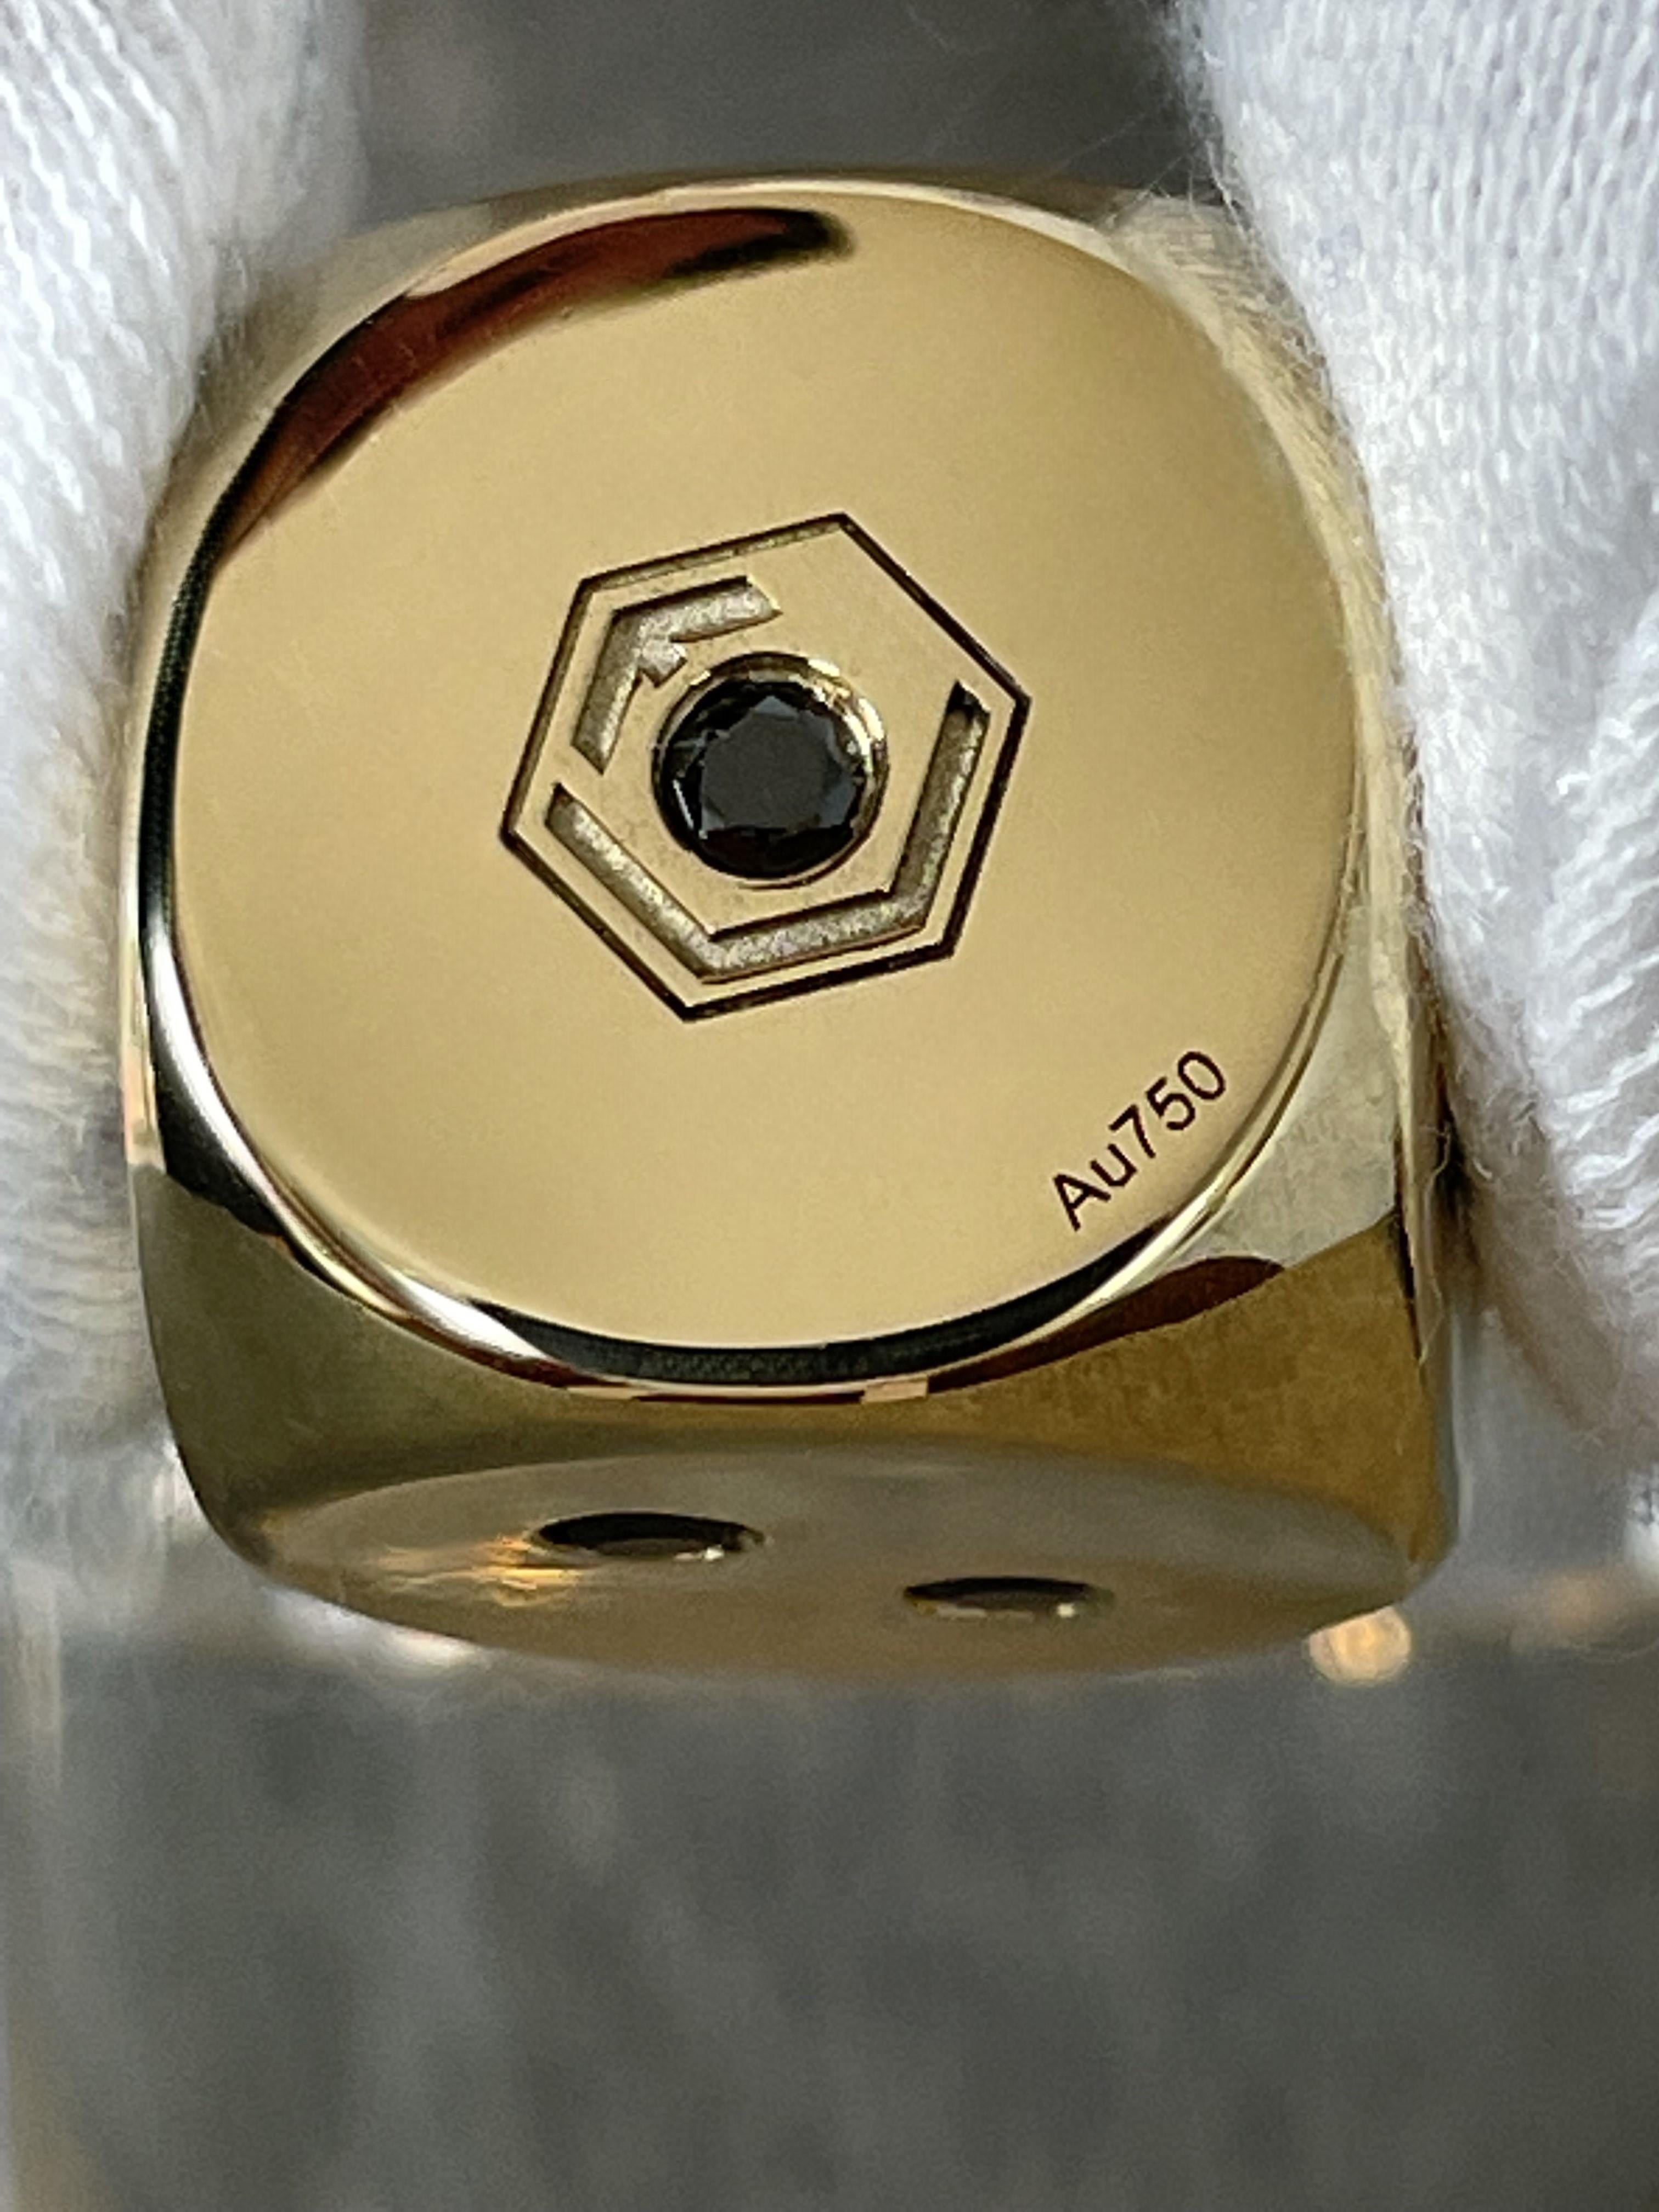 Der luxuriöse Würfel ist aus 18 Karat Gold gefertigt, vollmassiv und 21 schwarze Diamanten im Brillantschliff sind eingefasst.
Mit einem Gewicht von 54 Gramm, den Diagonalmaßen von jeweils 16 mm pro Seite, sowie den 2,5 mm großen 21 schwarzen